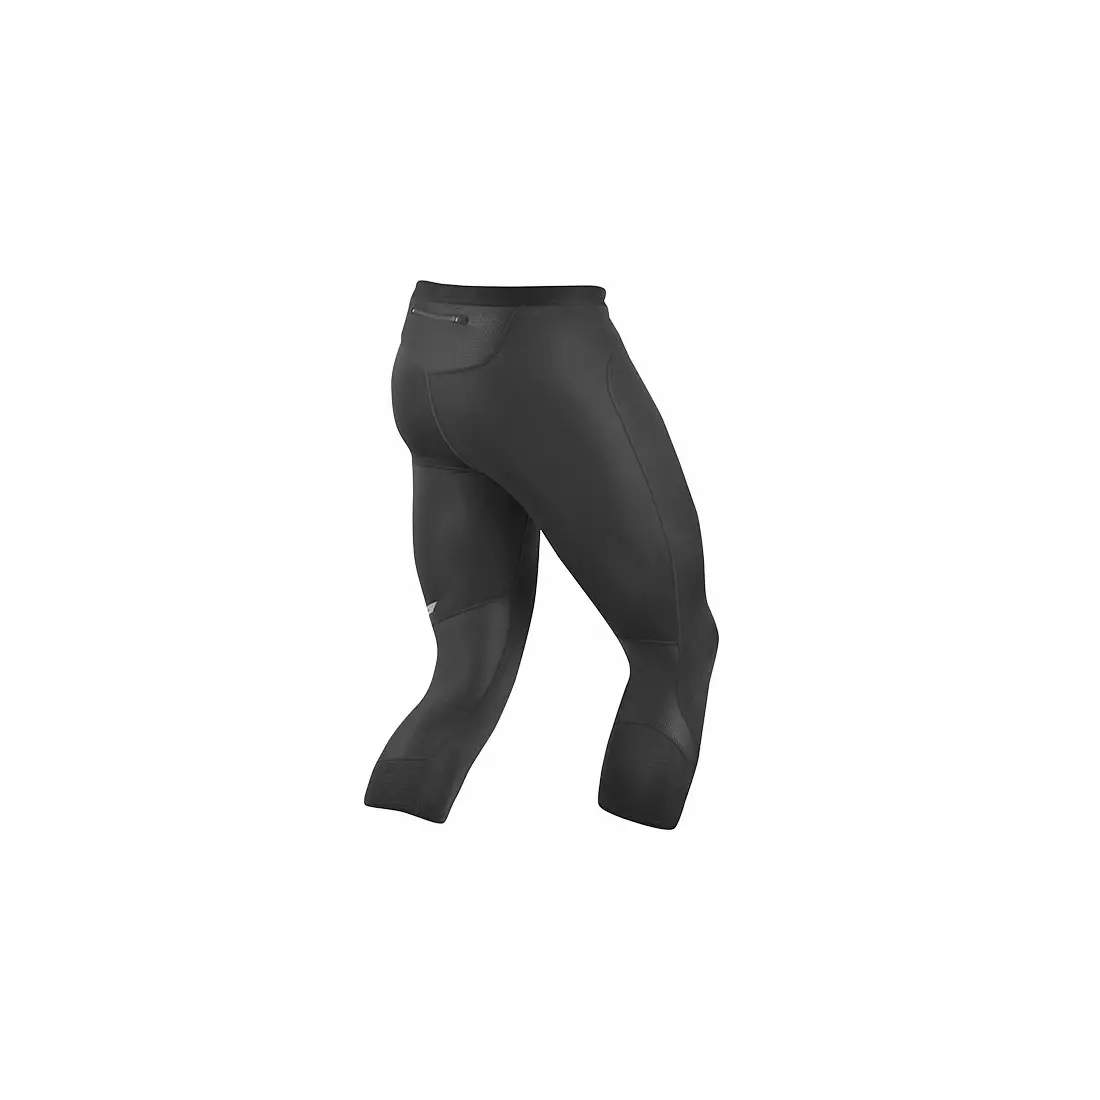 PEARL IZUMI RUN men's running shorts 3/4 FLASH 12111401-021, color: black